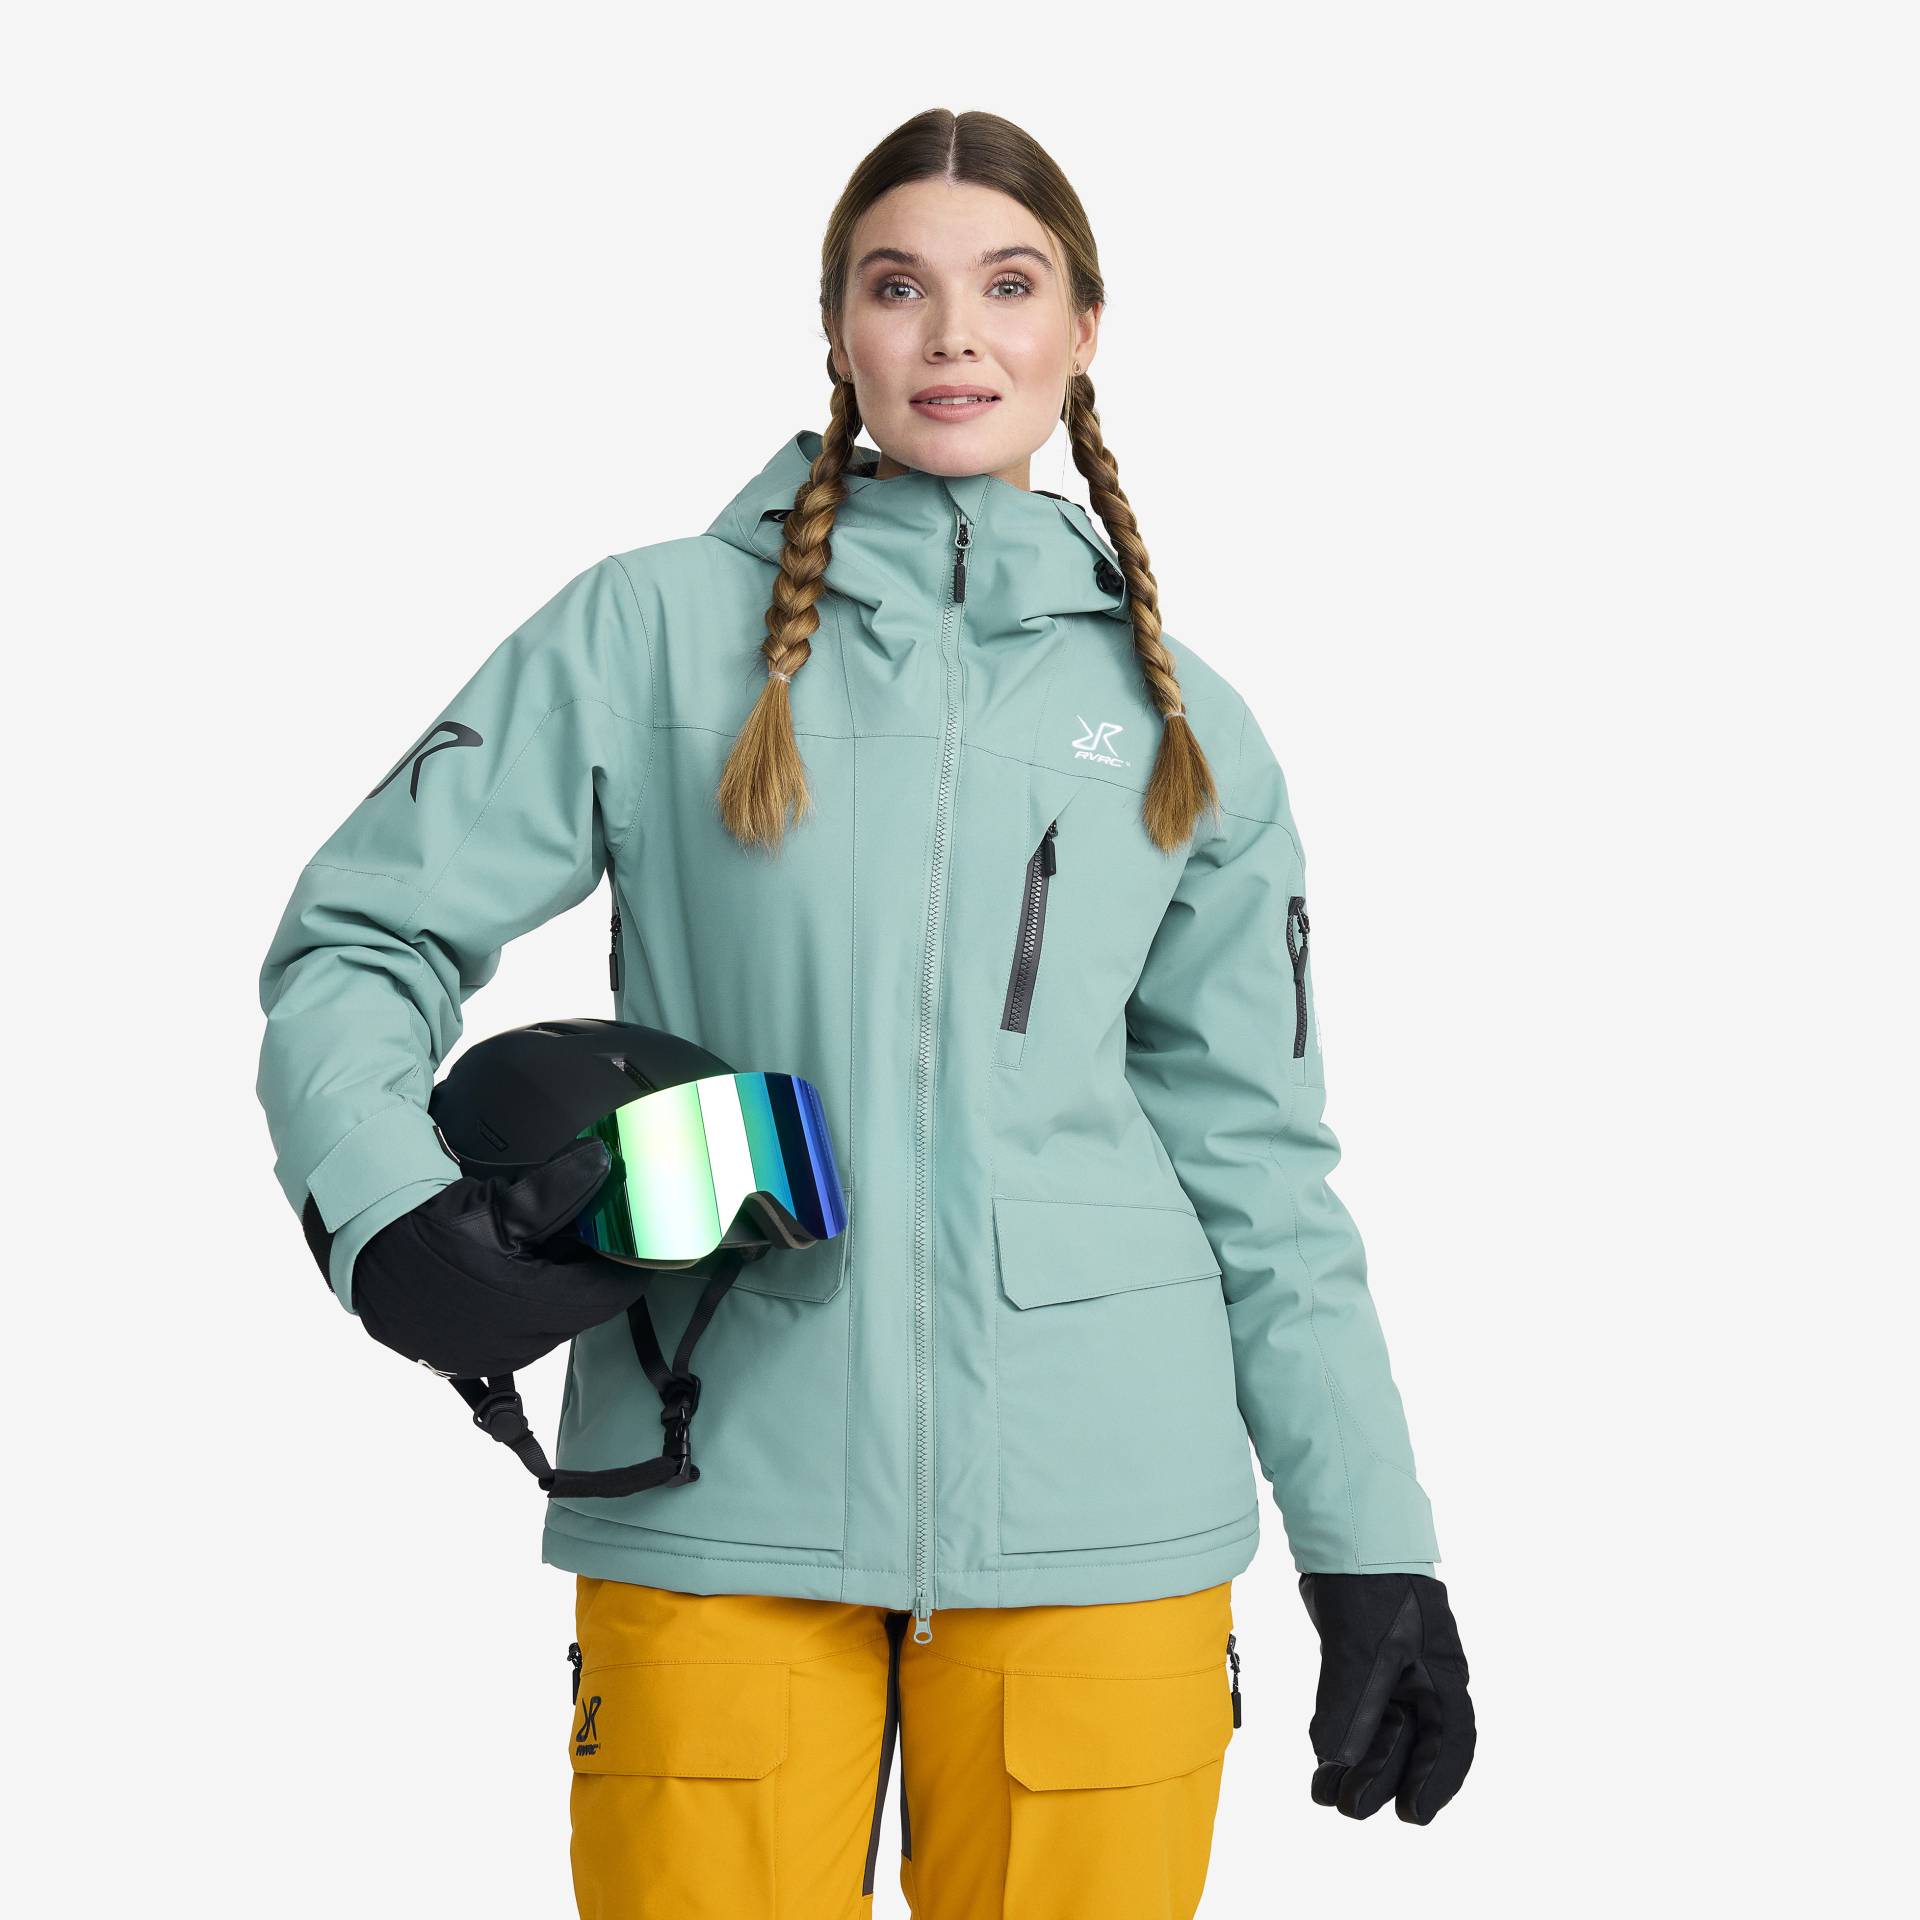 Halo 2L Insulated Ski Jacket Damen Arctic, Größe:S - Skijacken von RevolutionRace